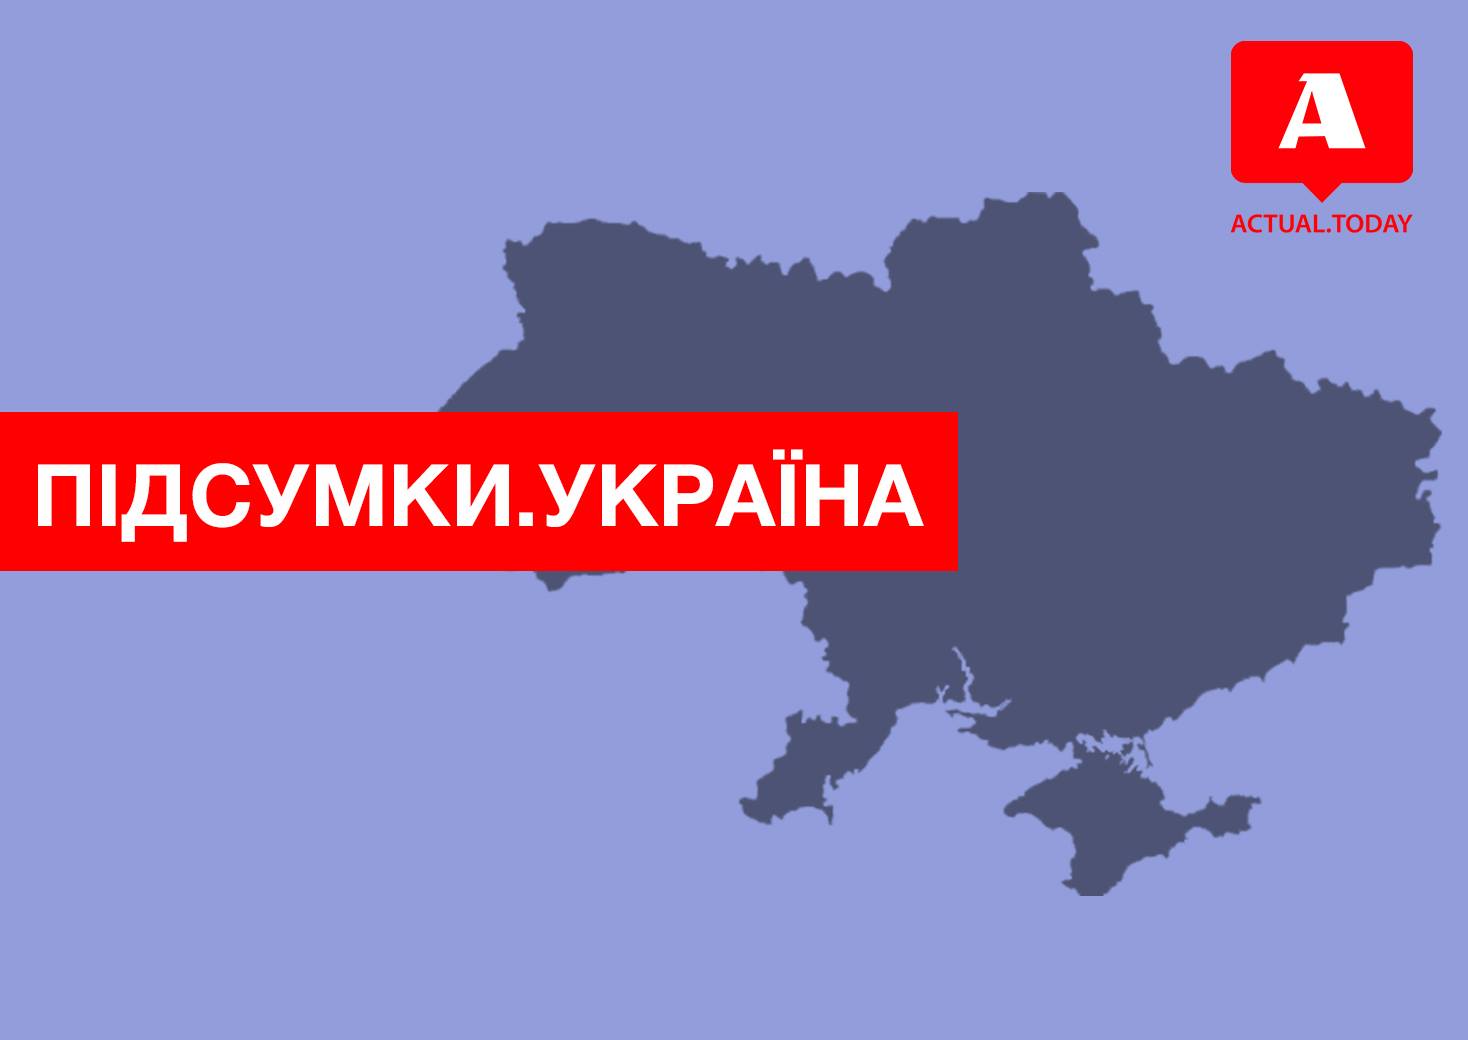 Вакарчук снова засобирался во власть, отзыв томоса и сожаления Филарета – главные новости среды в Украине